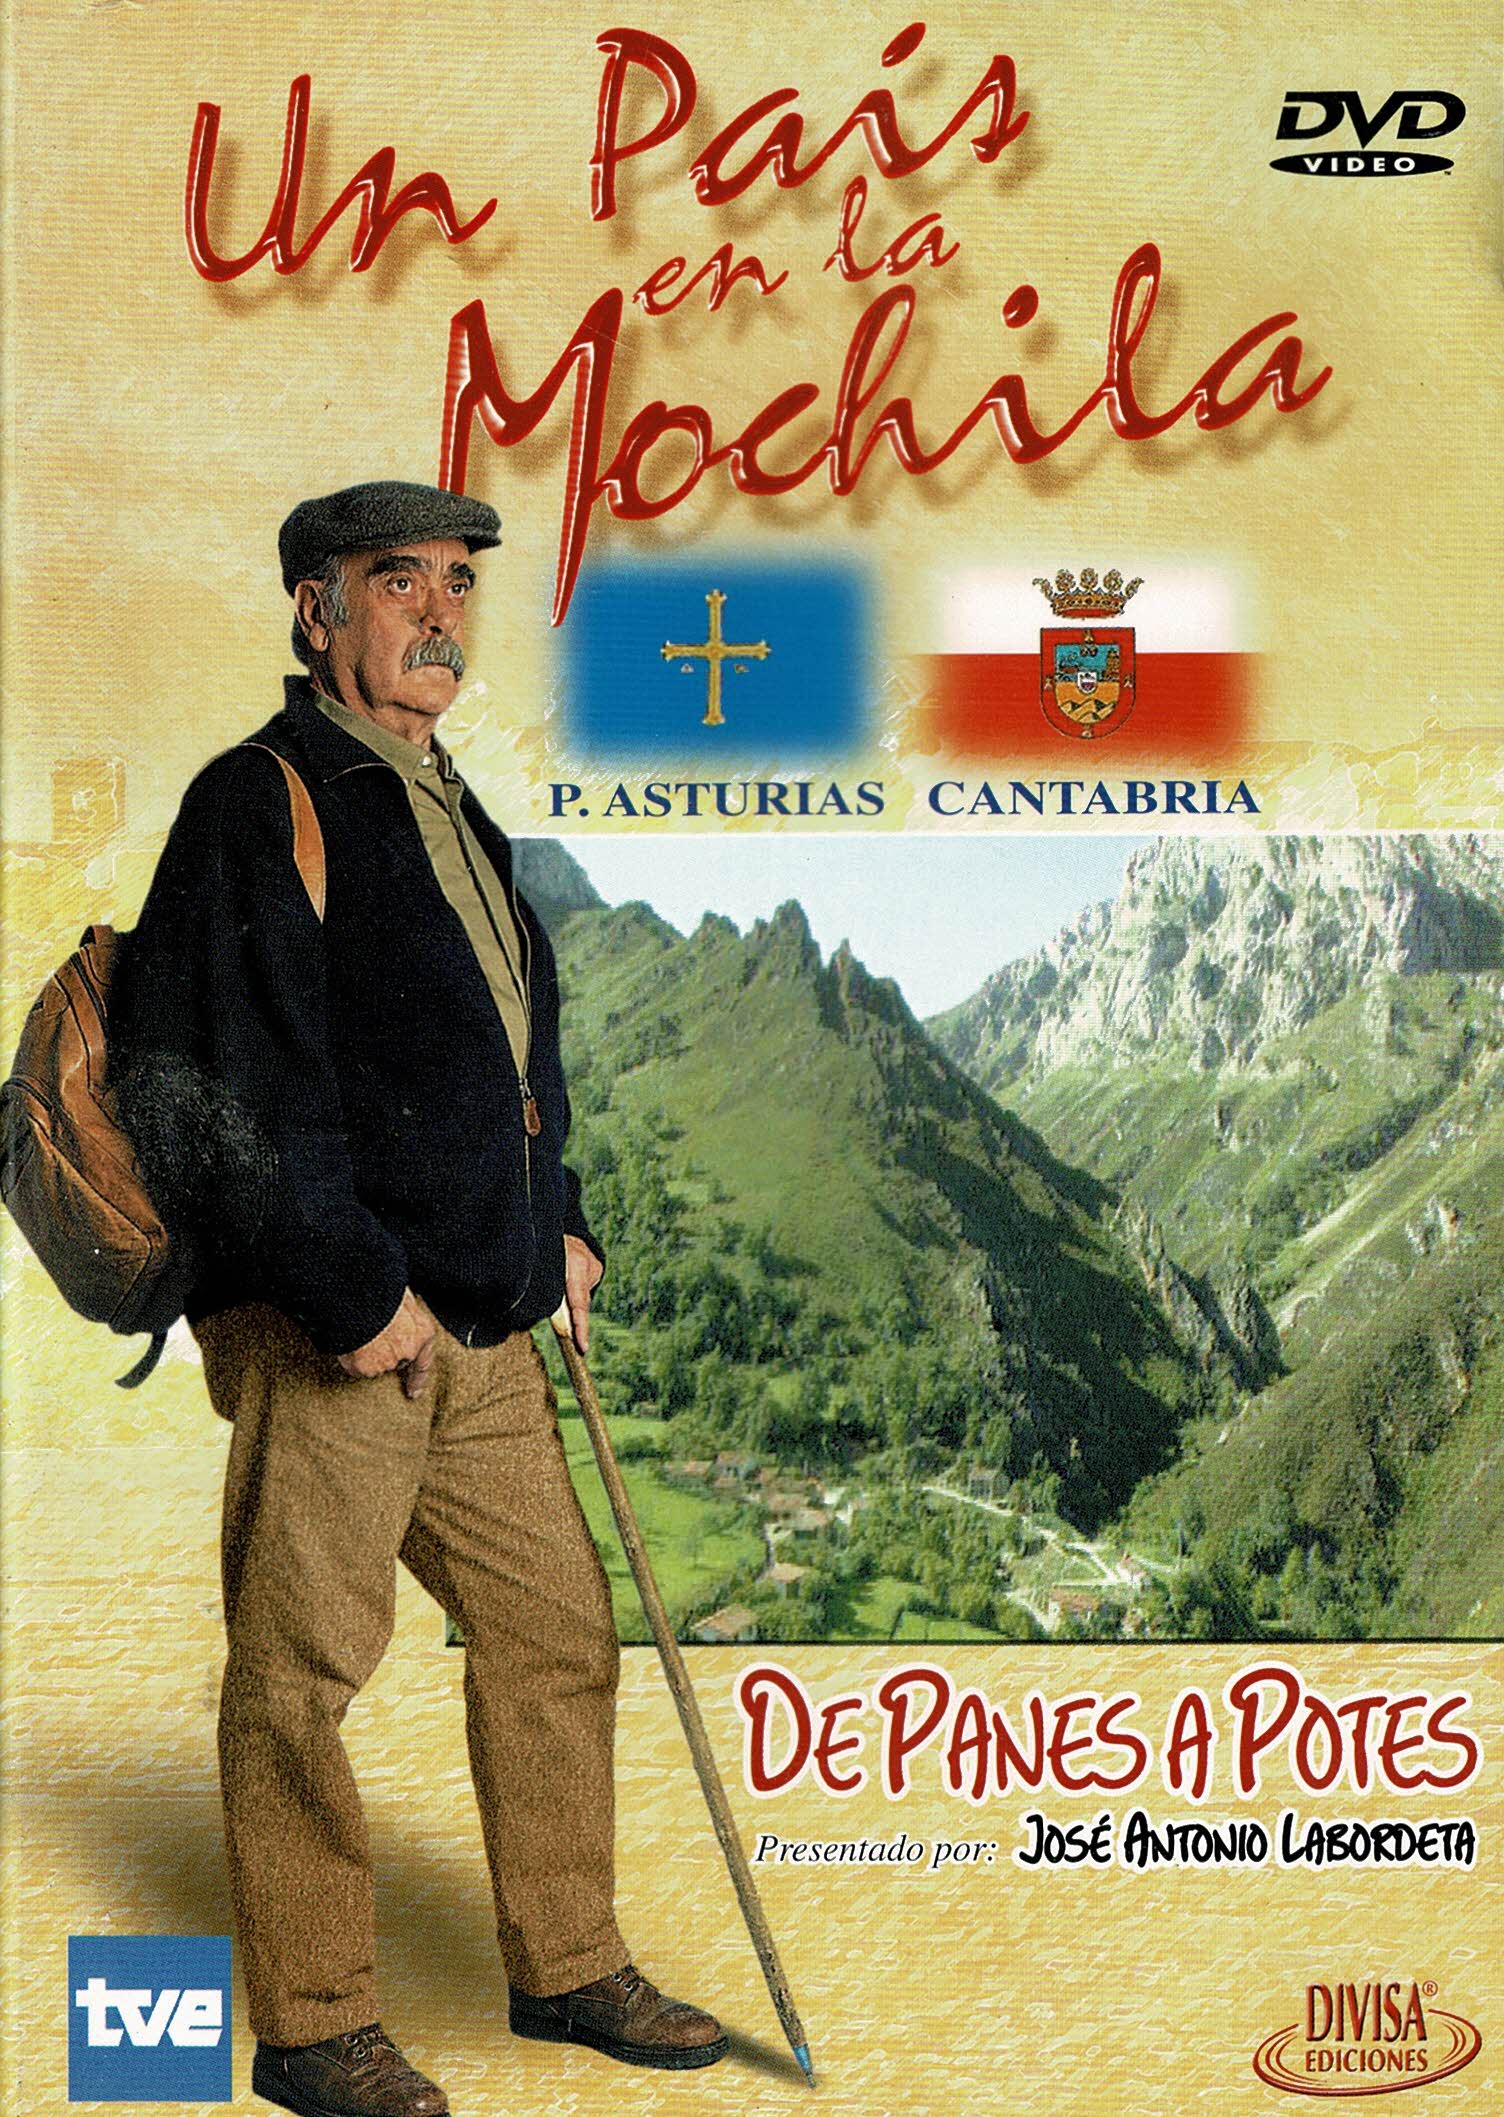 Un Pais en la Mochila : (P.Asturias-Cantabria) De Planes a Potes